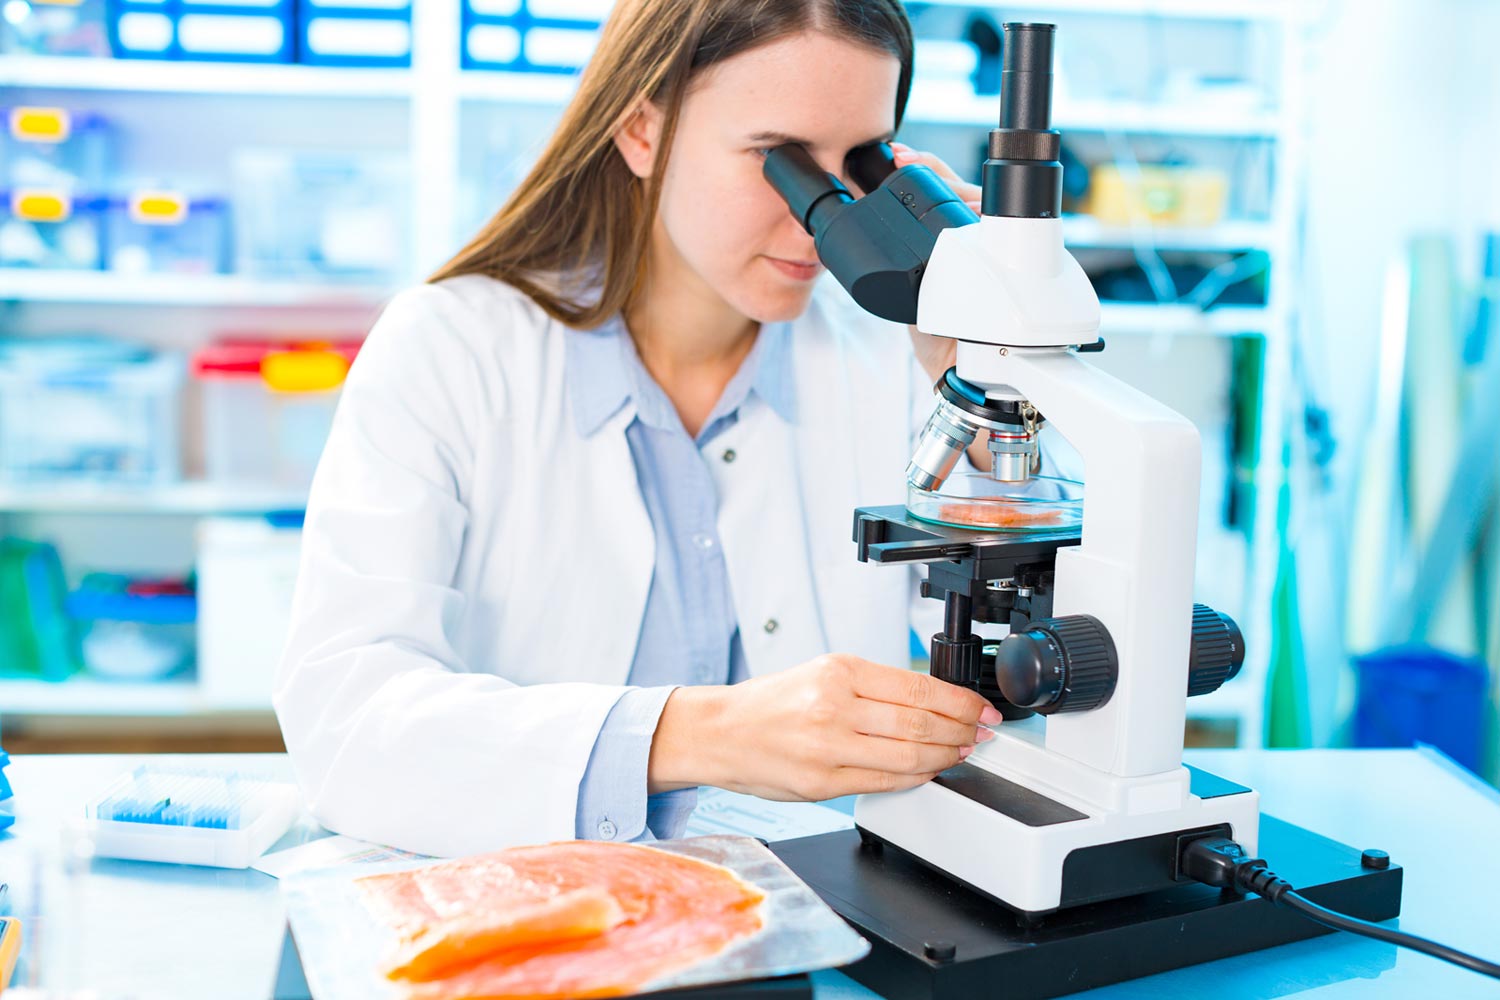 אישה בחלוק בודקת במעבדה חתיכת דג תחת מיקרוסקופ